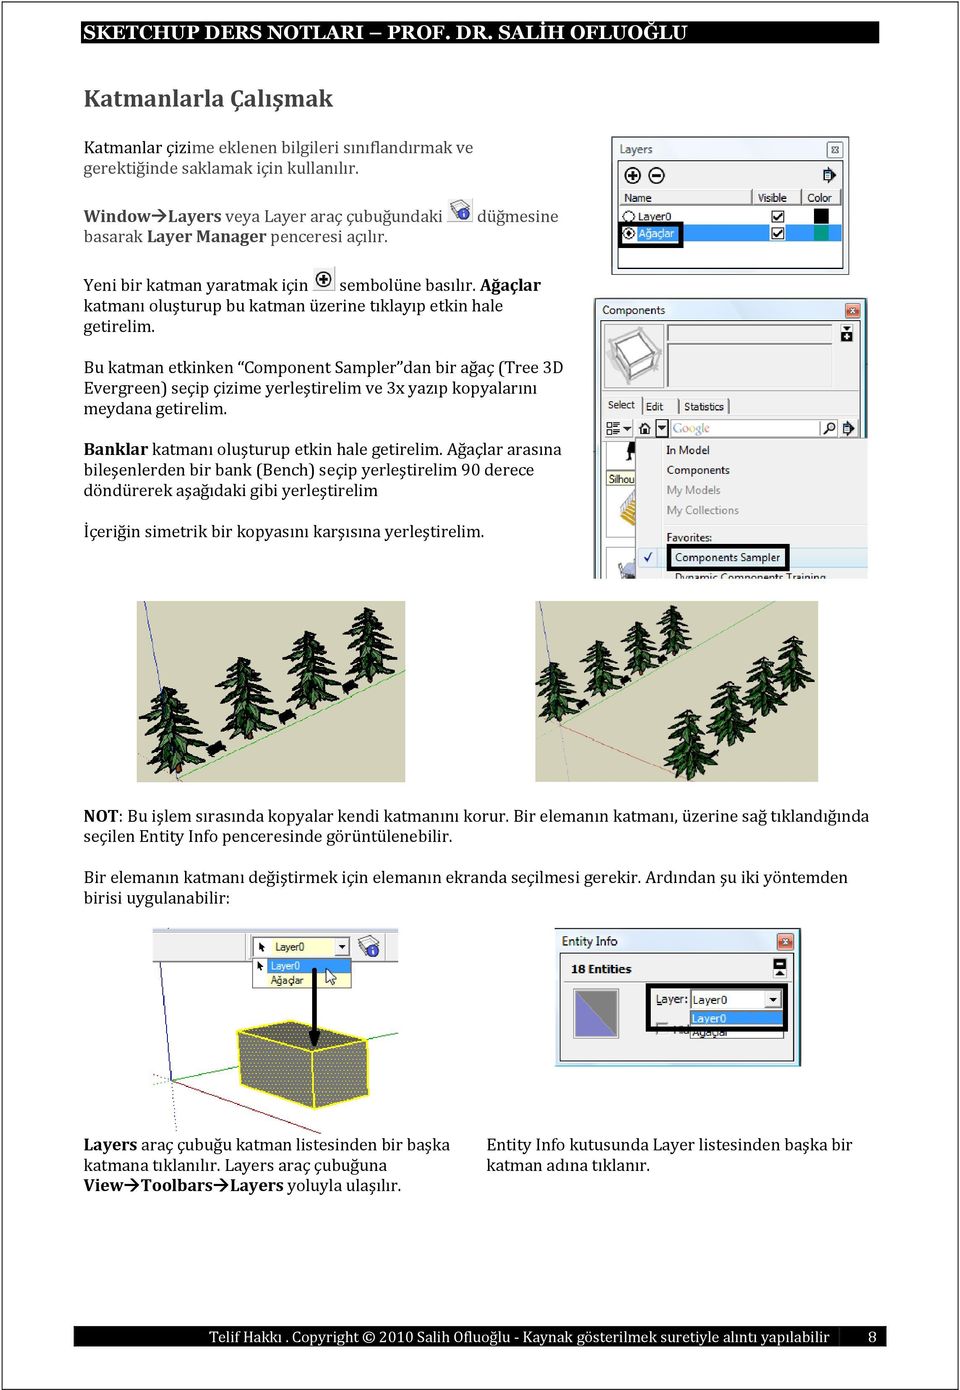 Bu katman etkinken Component Sampler dan bir ağaç (Tree 3D Evergreen) seçip çizime yerleştirelim ve 3x yazıp kopyalarını meydana getirelim. Banklar katmanı oluşturup etkin hale getirelim.